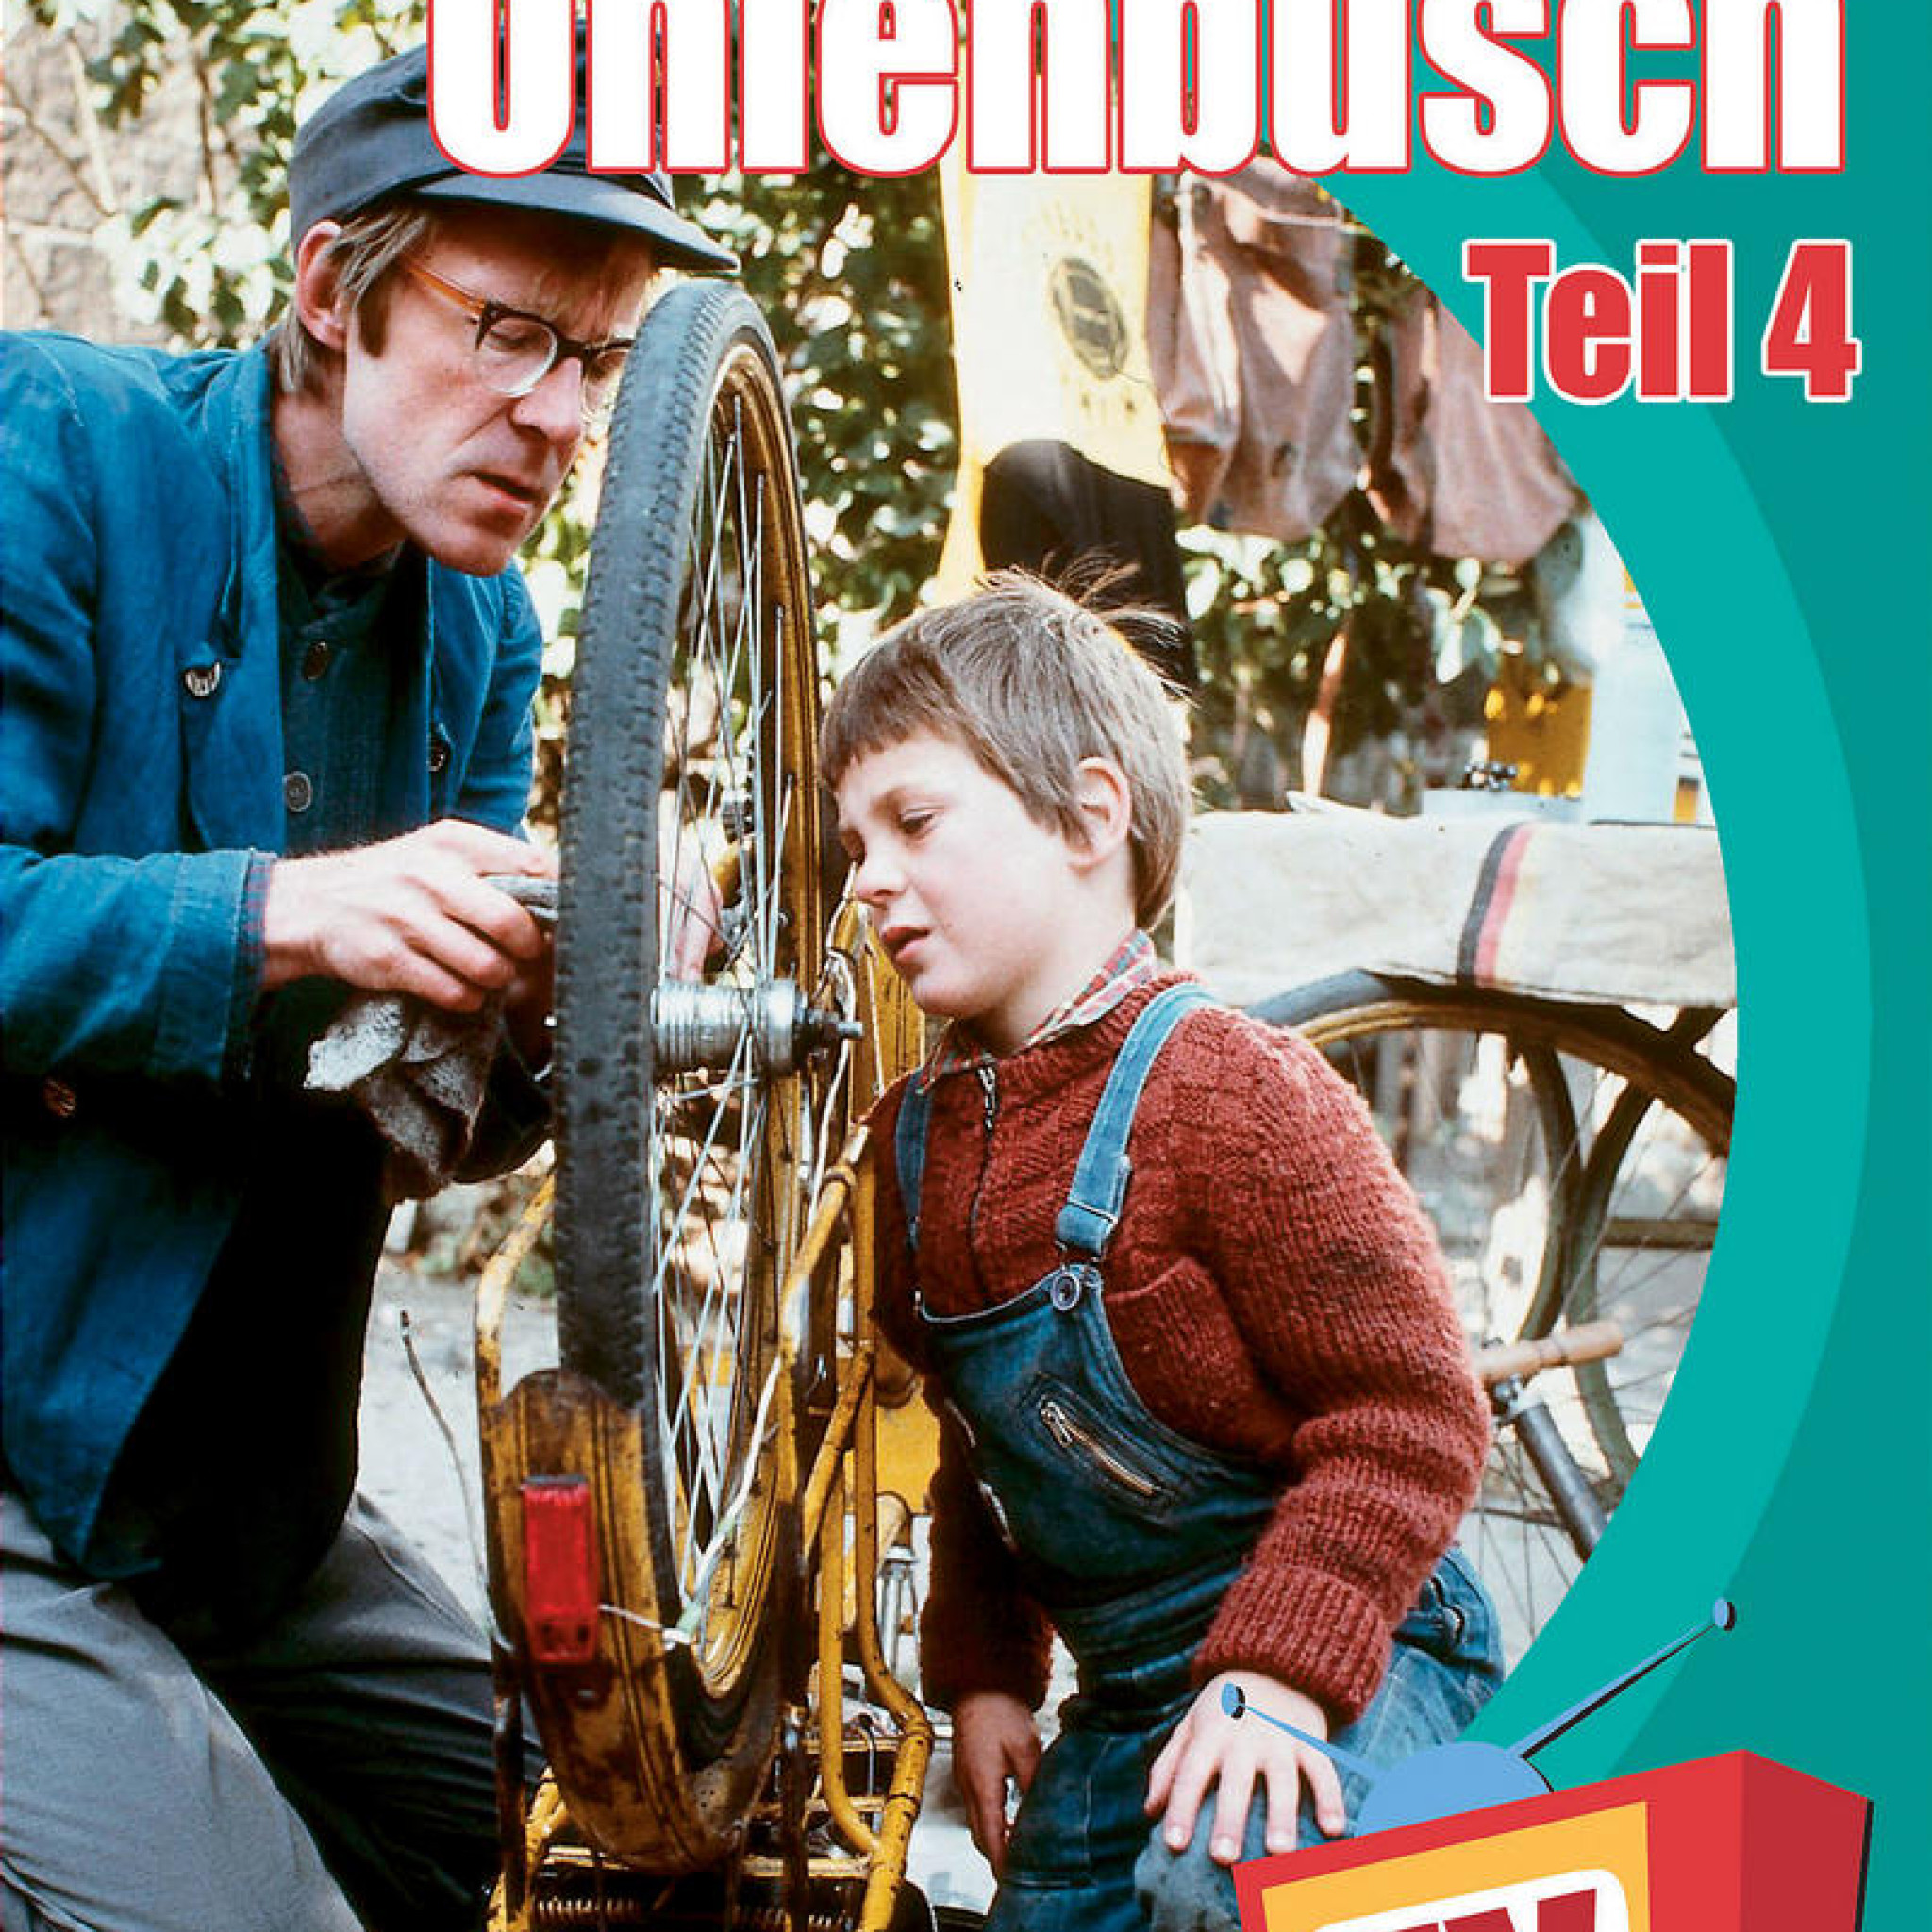 Neues aus Uhlenbusch (Vol. 4) 0602498186288